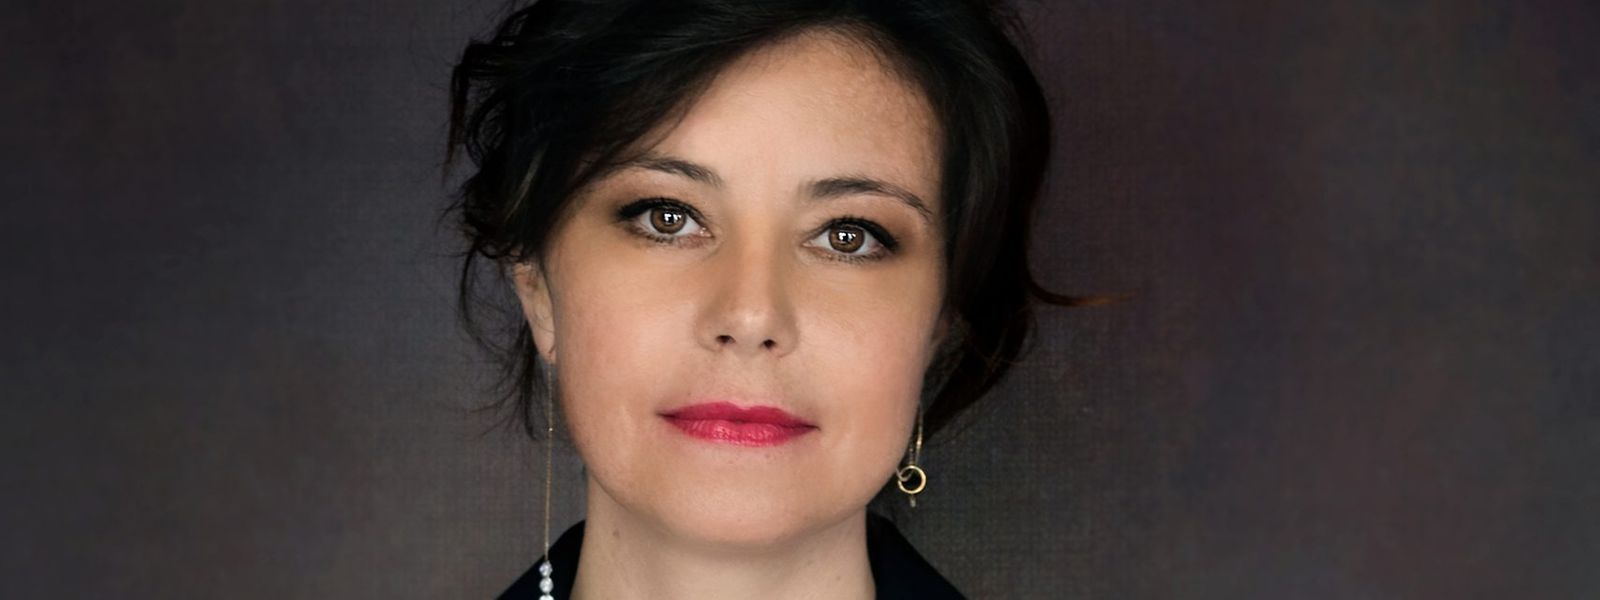 La réalisatrice franco-algérienne Mounia Meddour présidera le jury long-métrages de l'édition 2022 du festival.